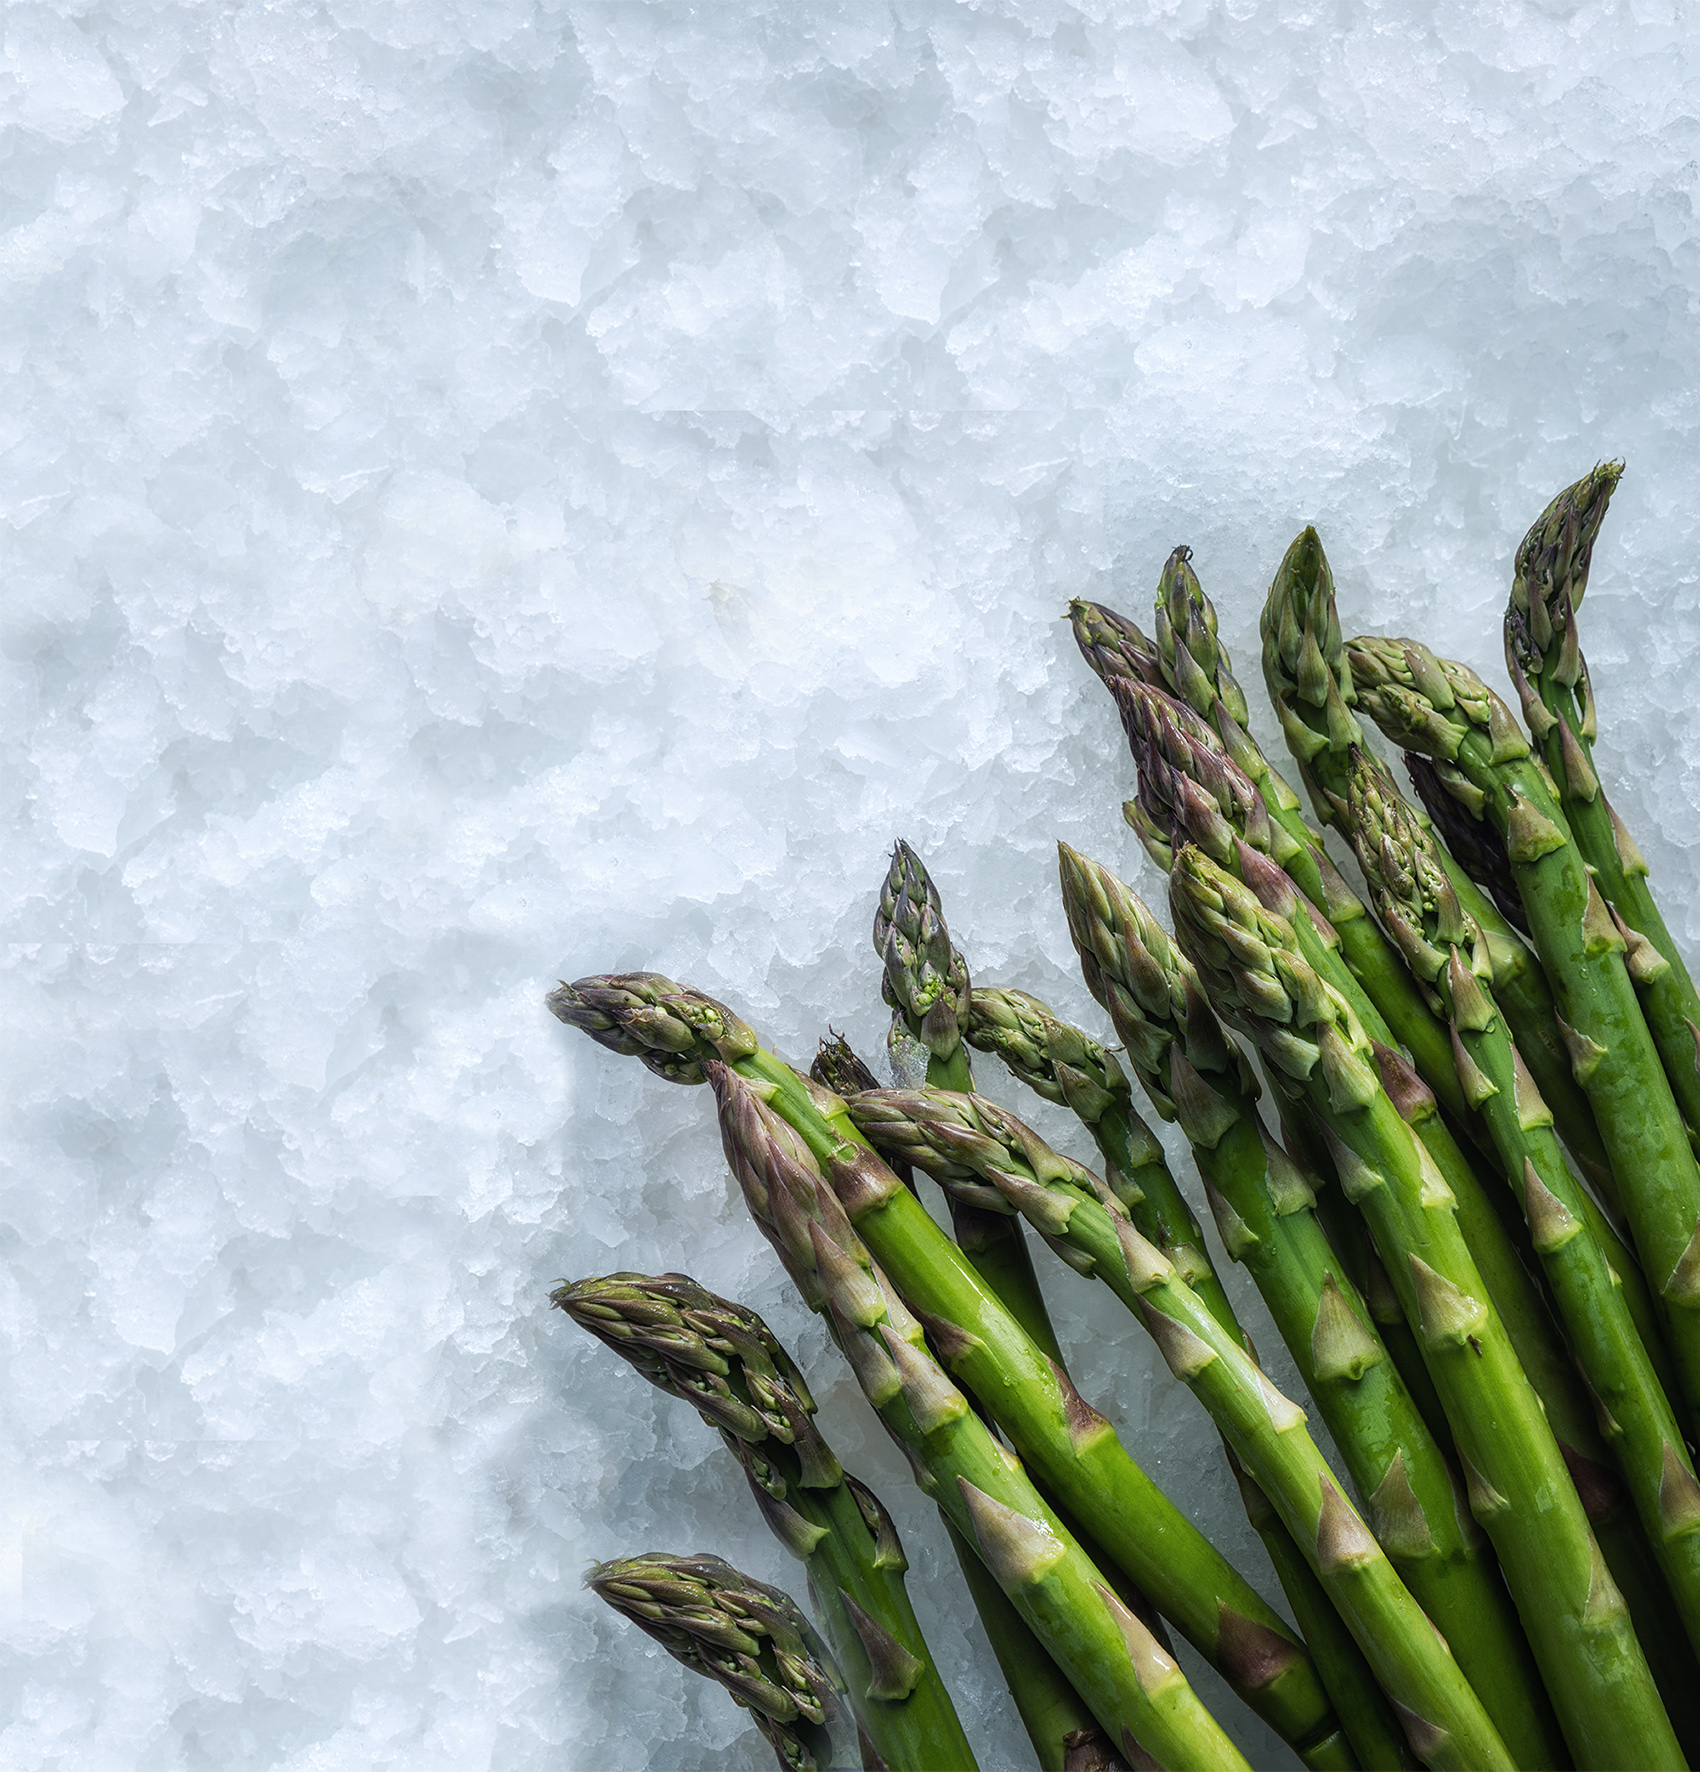 MAJA Ice keeps asparagus fresh